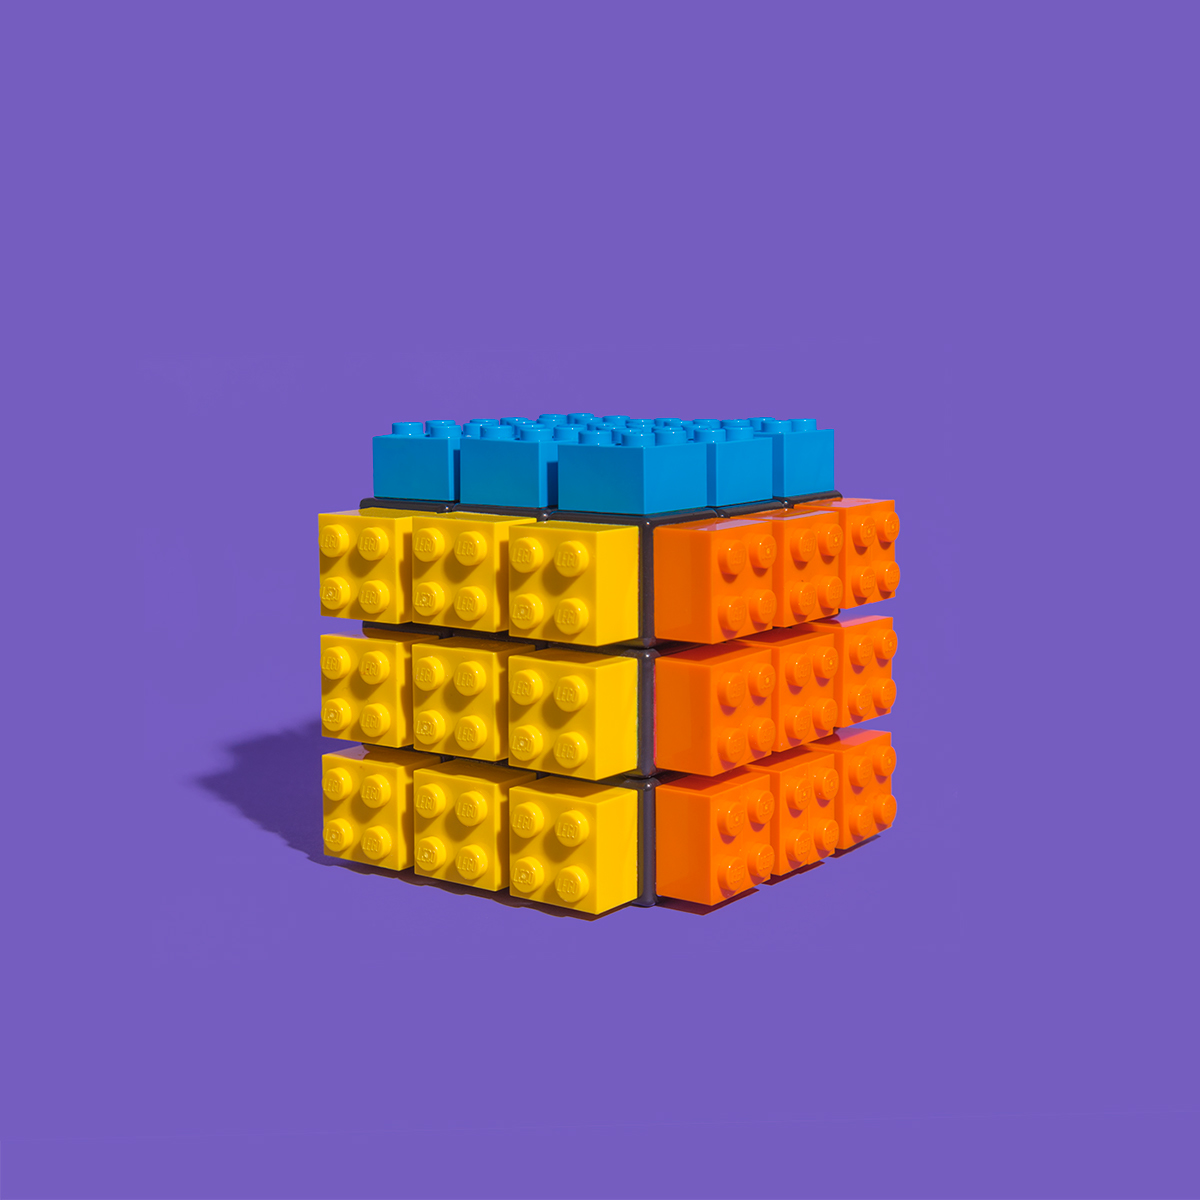 LEGO Rubik